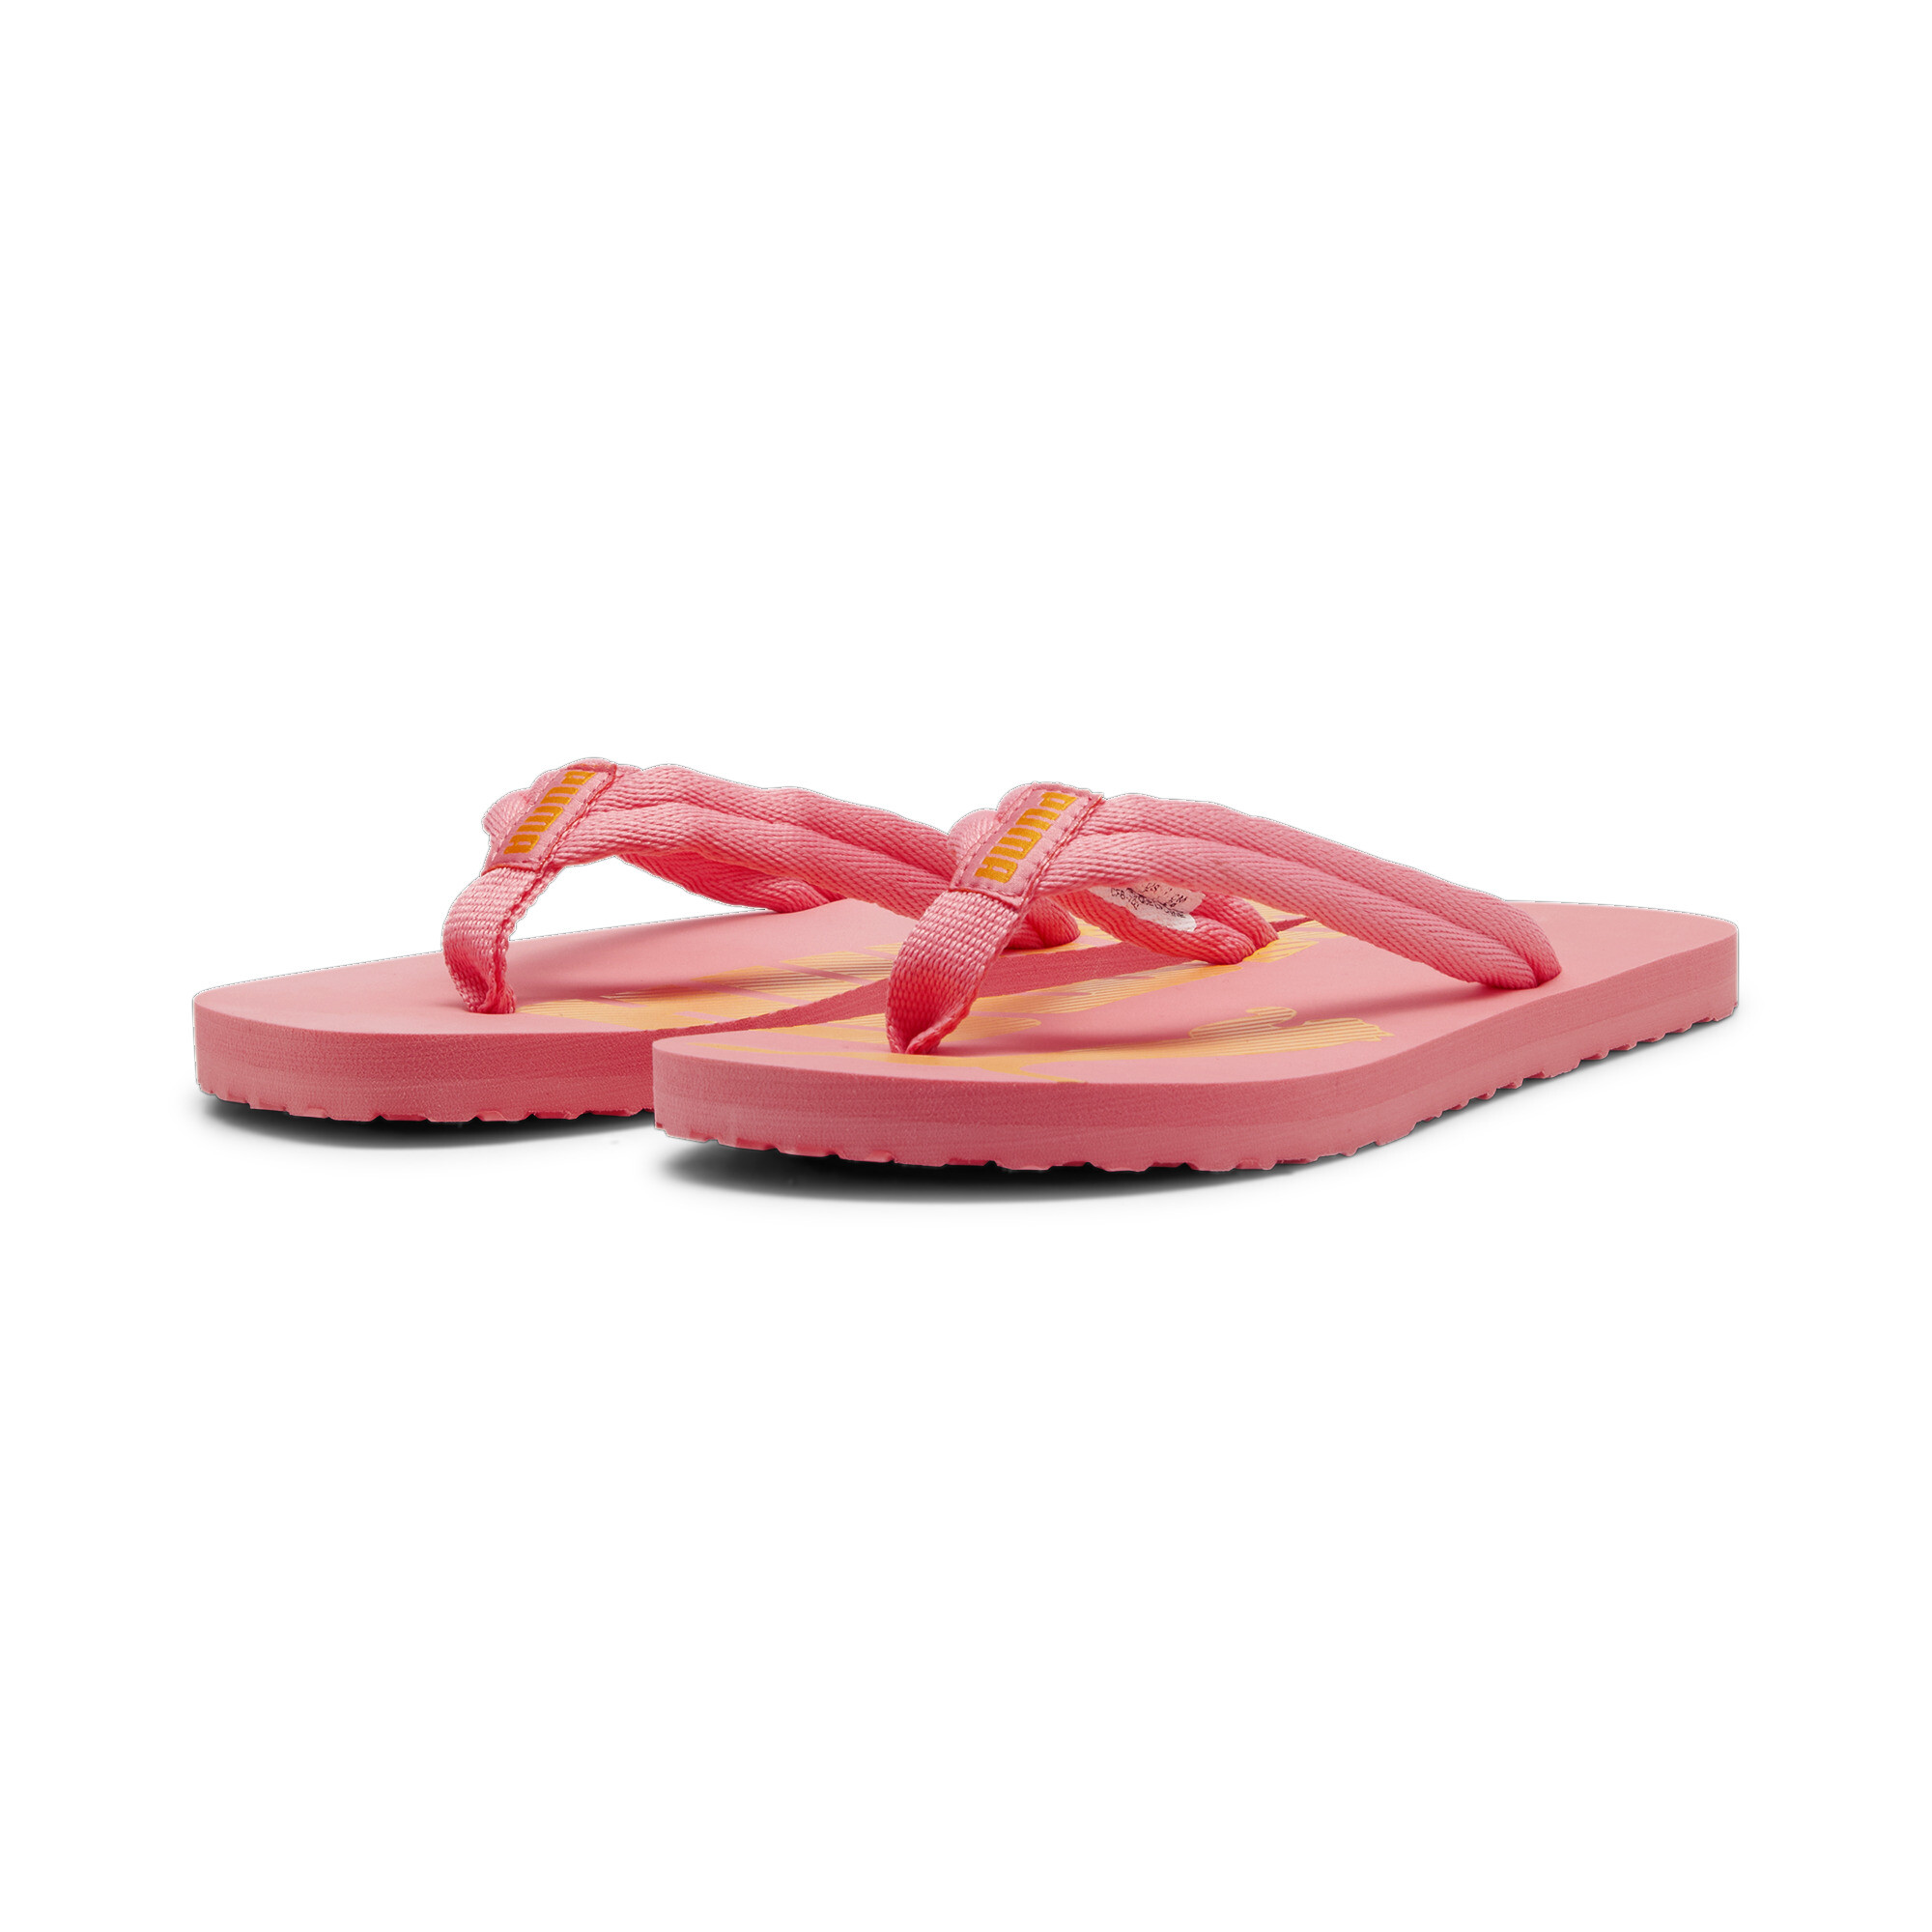 Men's PUMA Epic Flip V2 Sandals In Pink, Size EU 42